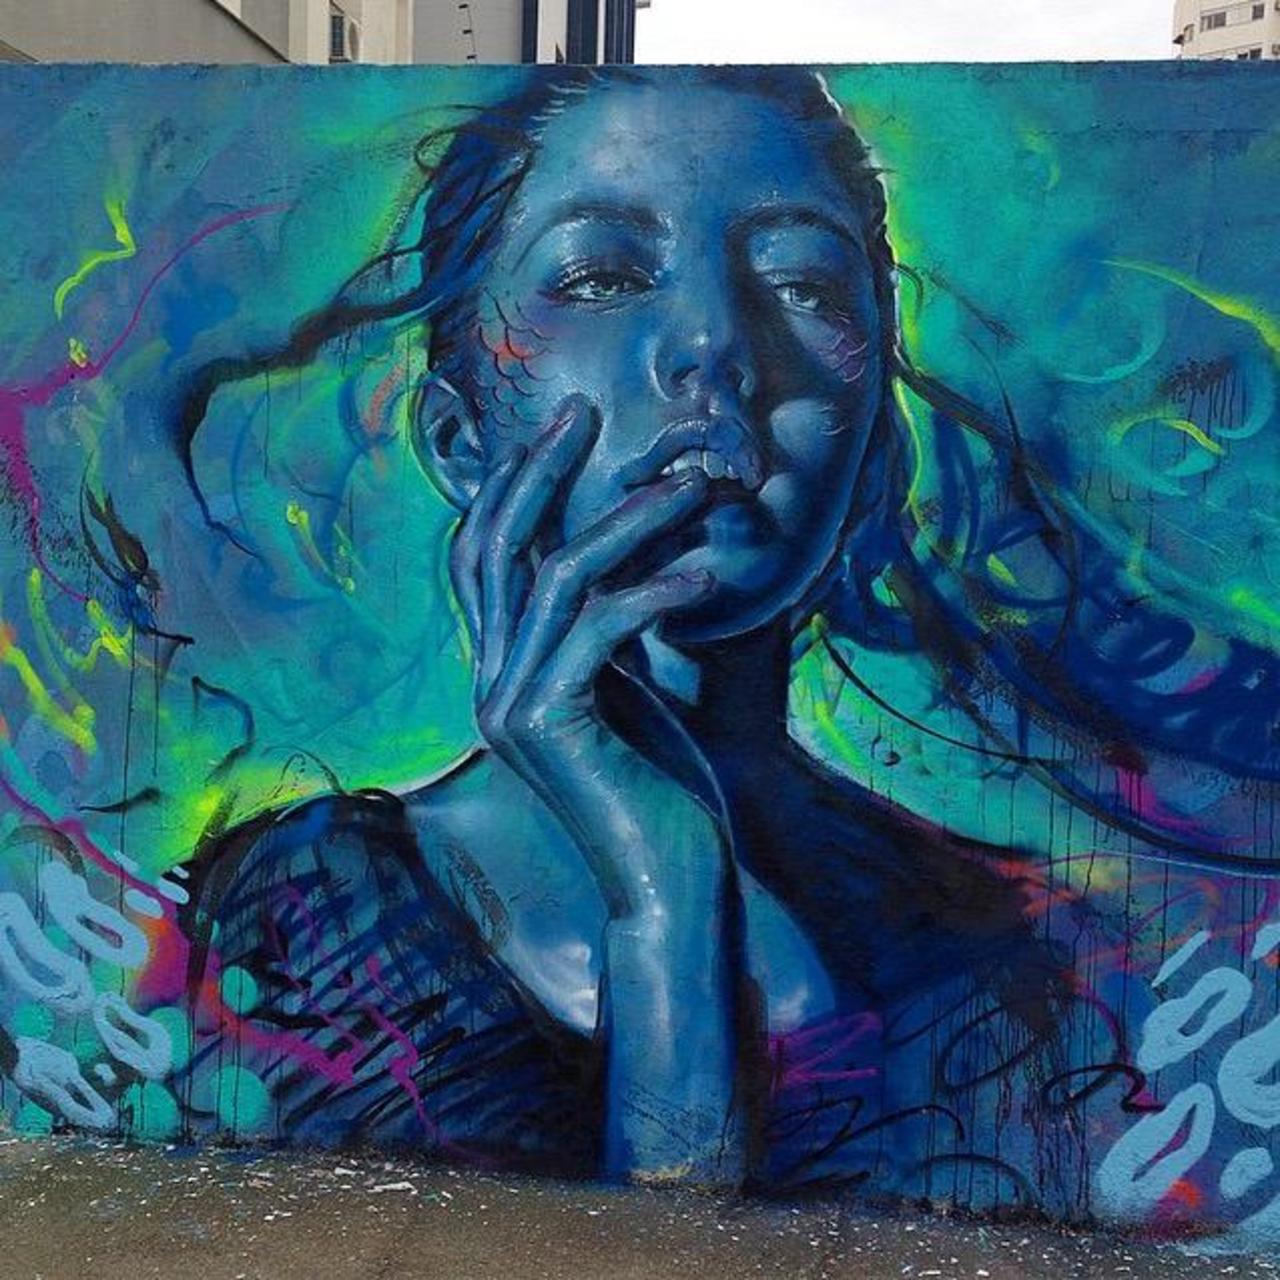 Thiago Valdi new Street Art piece titled 'Day Dreamer'

#art #mural #graffiti #streetart http://t.co/ZbxrYfuNXD